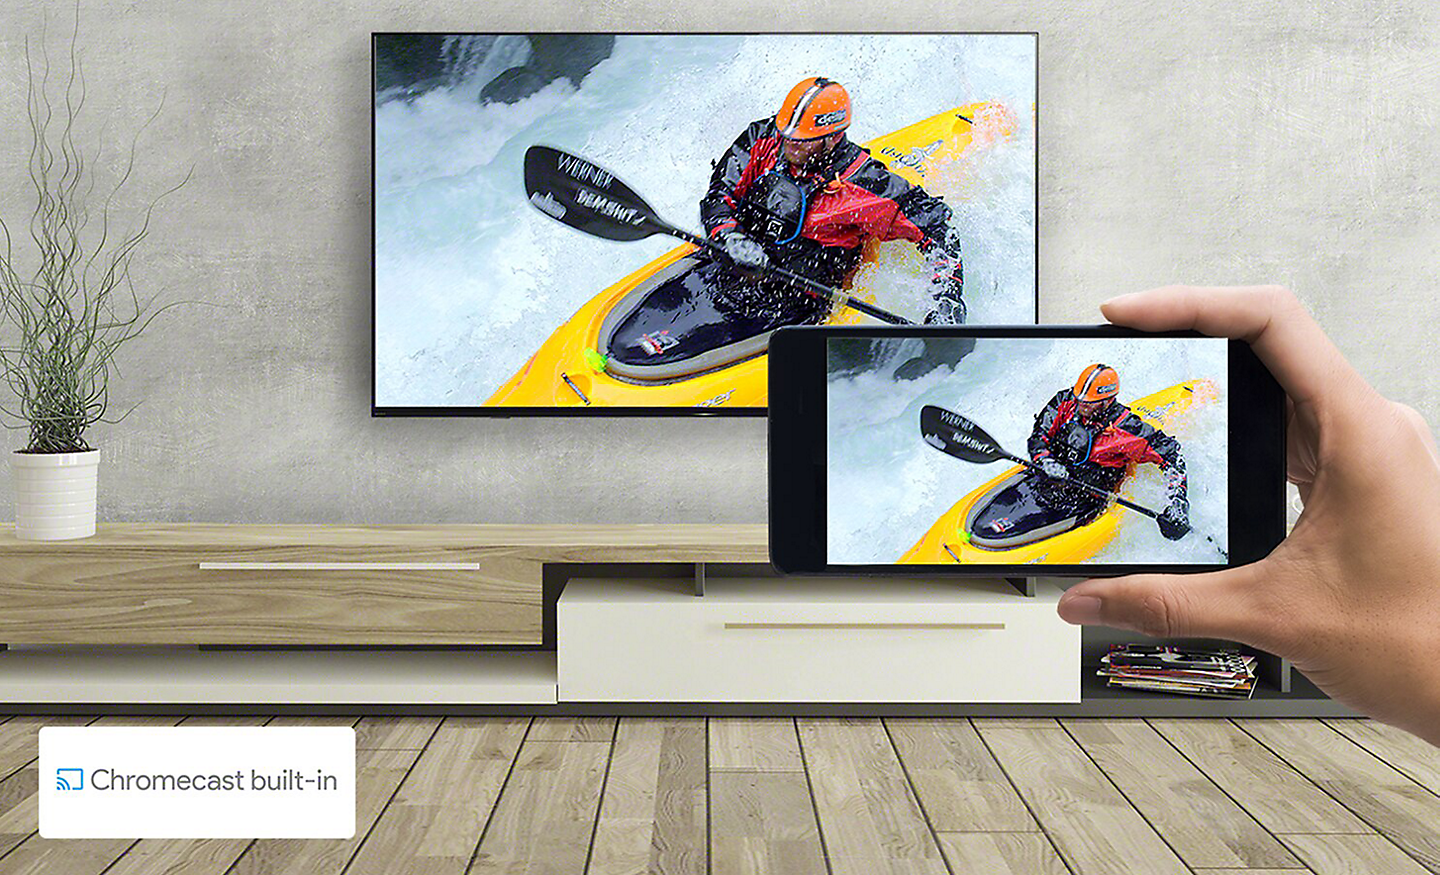 Une main tient un smartphone devant un téléviseur à support mural : les deux écrans affichent la même image de kayak. Un logo Chromecast built-in se trouve en bas à gauche.